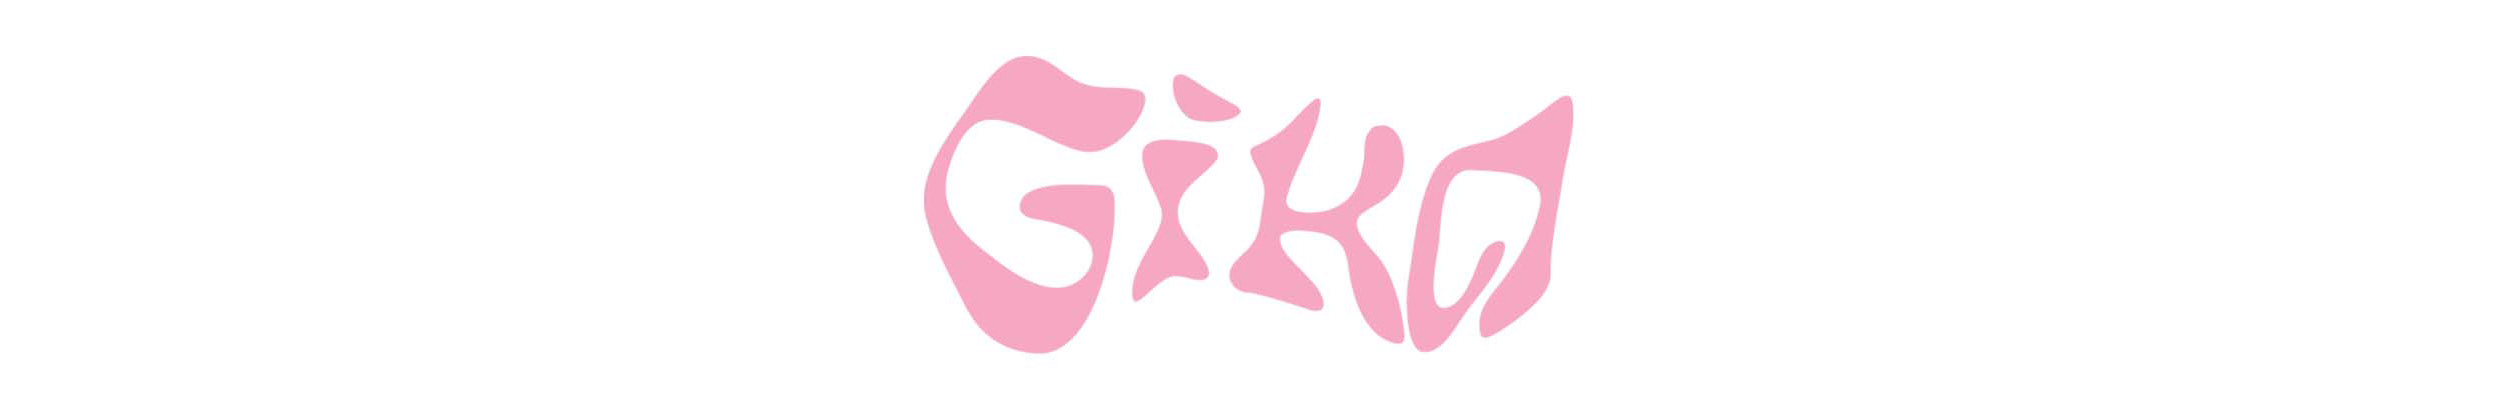 Gika Leão のプロファイルバナー